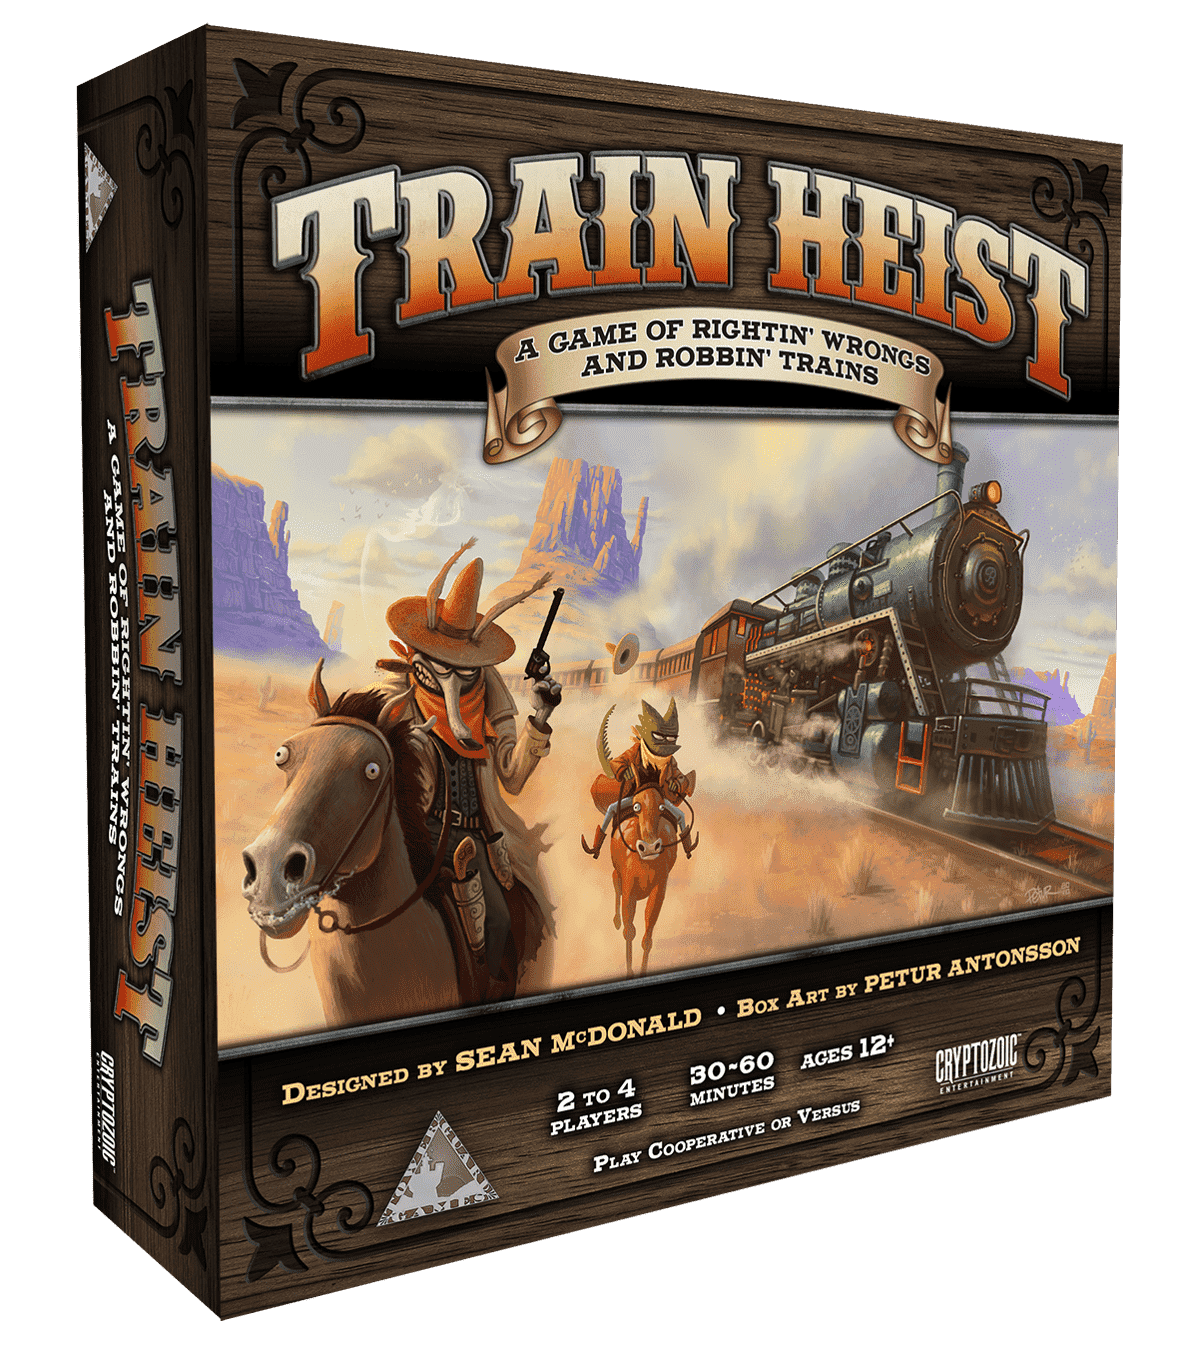 Train Heist: Ein Spiel von Rightin 'Wrongs And Robbin' Trains Retail Board Spiel Cryptozoic Entertainment Tower Guard Spiele